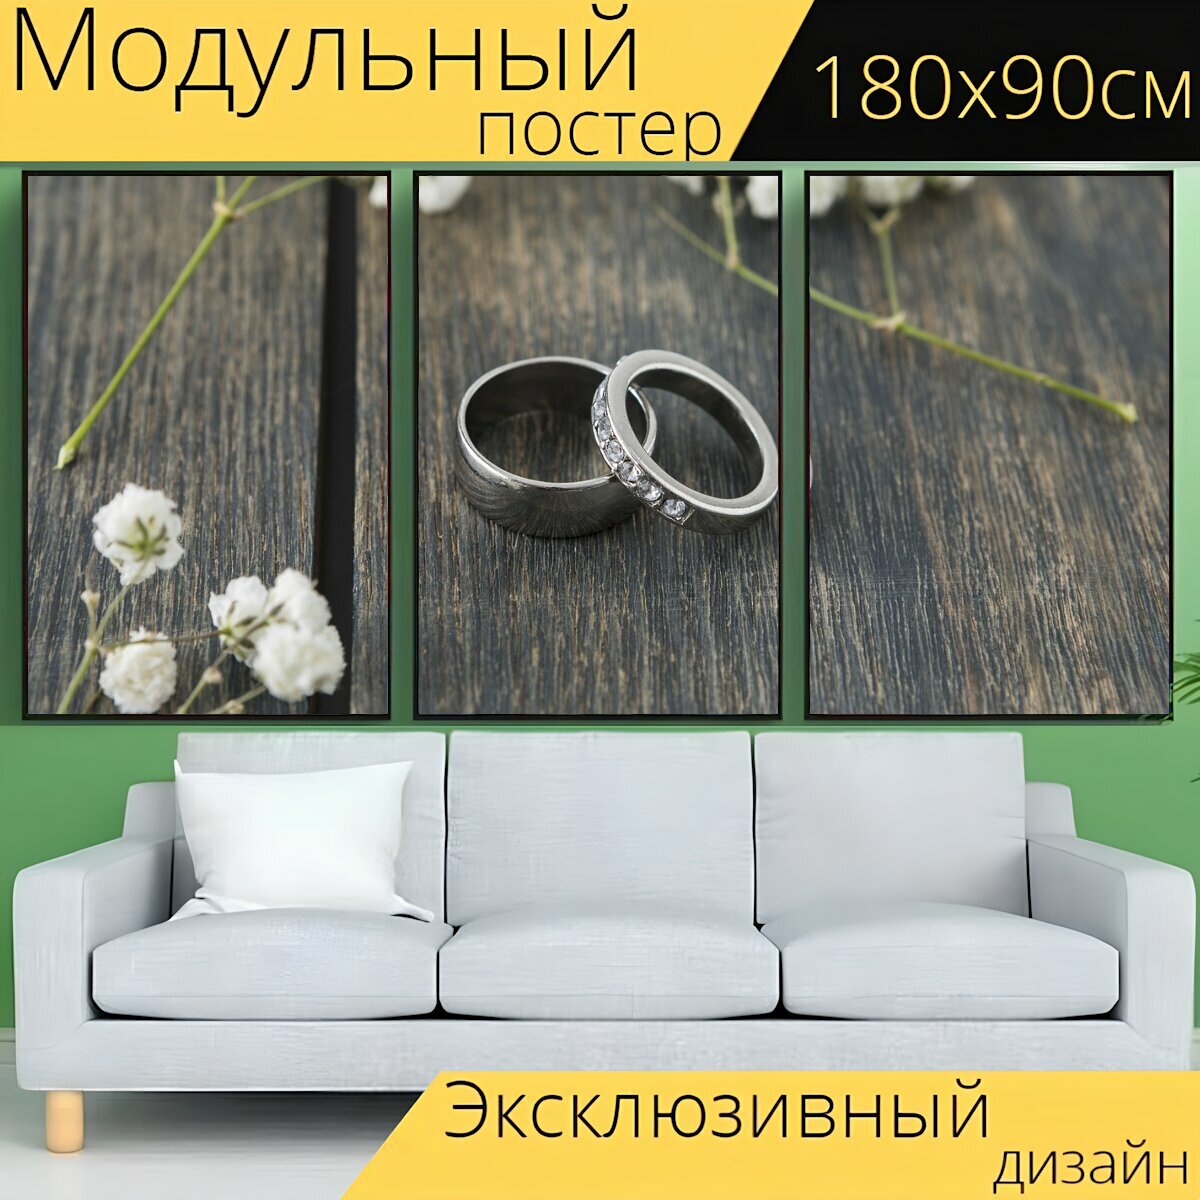 Модульный постер "Кольца, обручальное кольцо, помолвка" 180 x 90 см. для интерьера